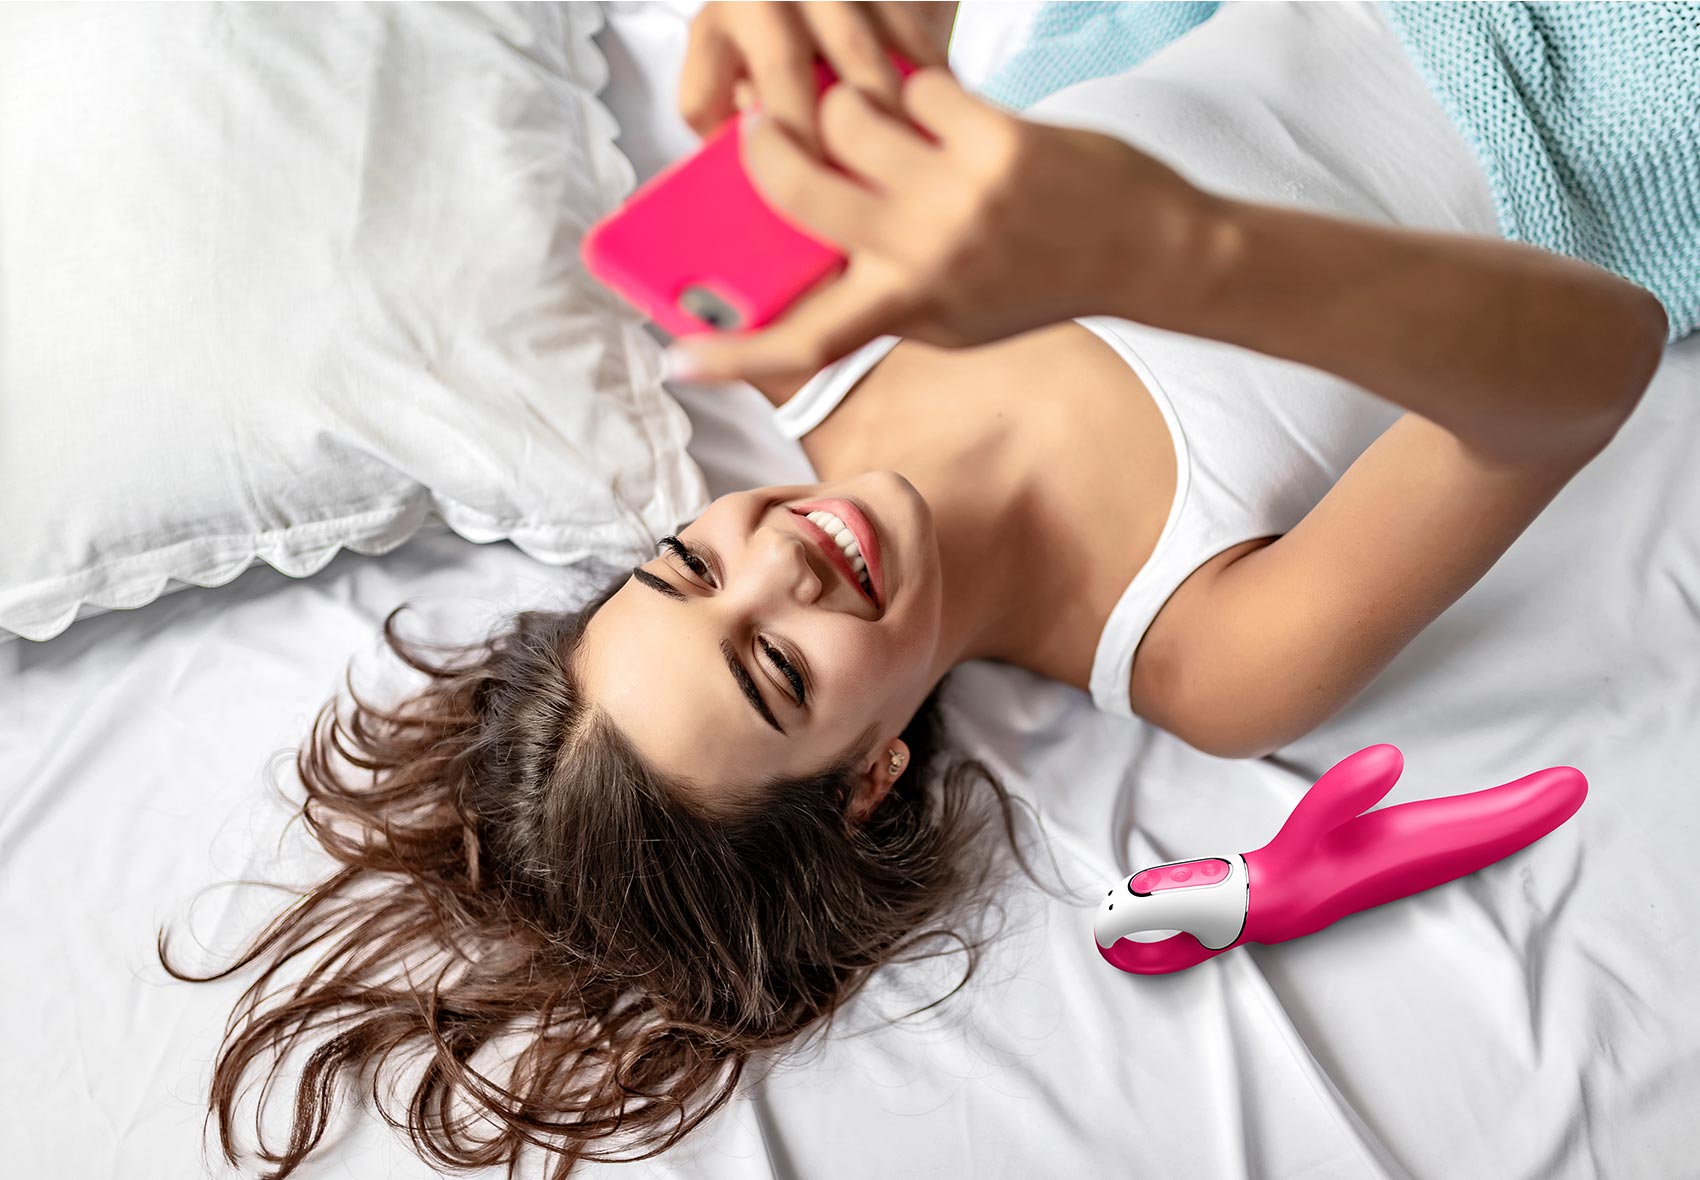 Frau im Bett mit Handy und Rabbitvibrator